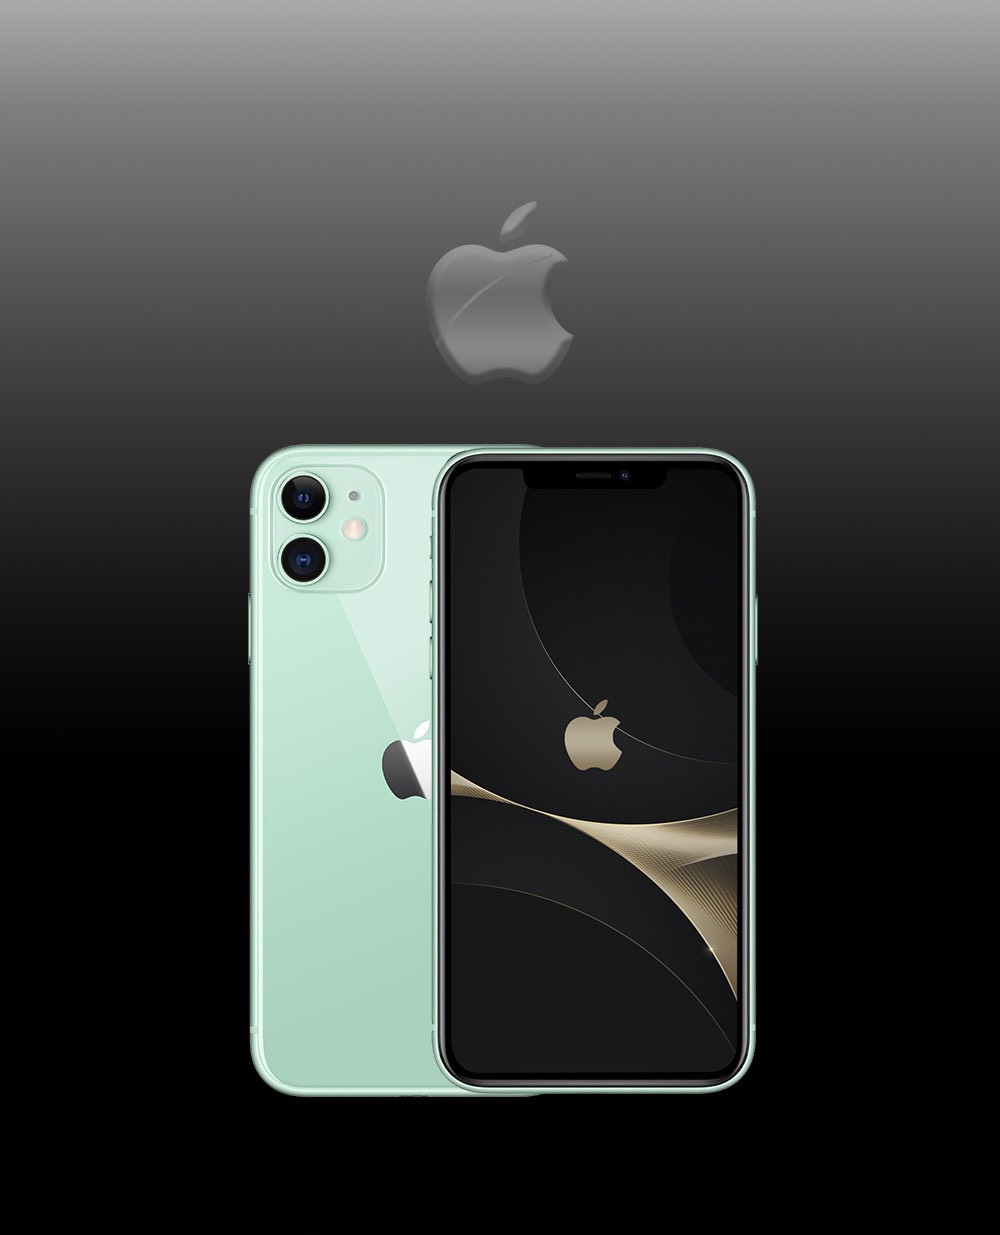 Clickbuy - Chọn Là Mua - 😍 iPhone 11 Pro Max cũ 99%, Hàng nguyên zin đẹp  long lanh cứ phải gọi là hết giờ luôn ✨ Chỉ cần 5tr4 thôi là